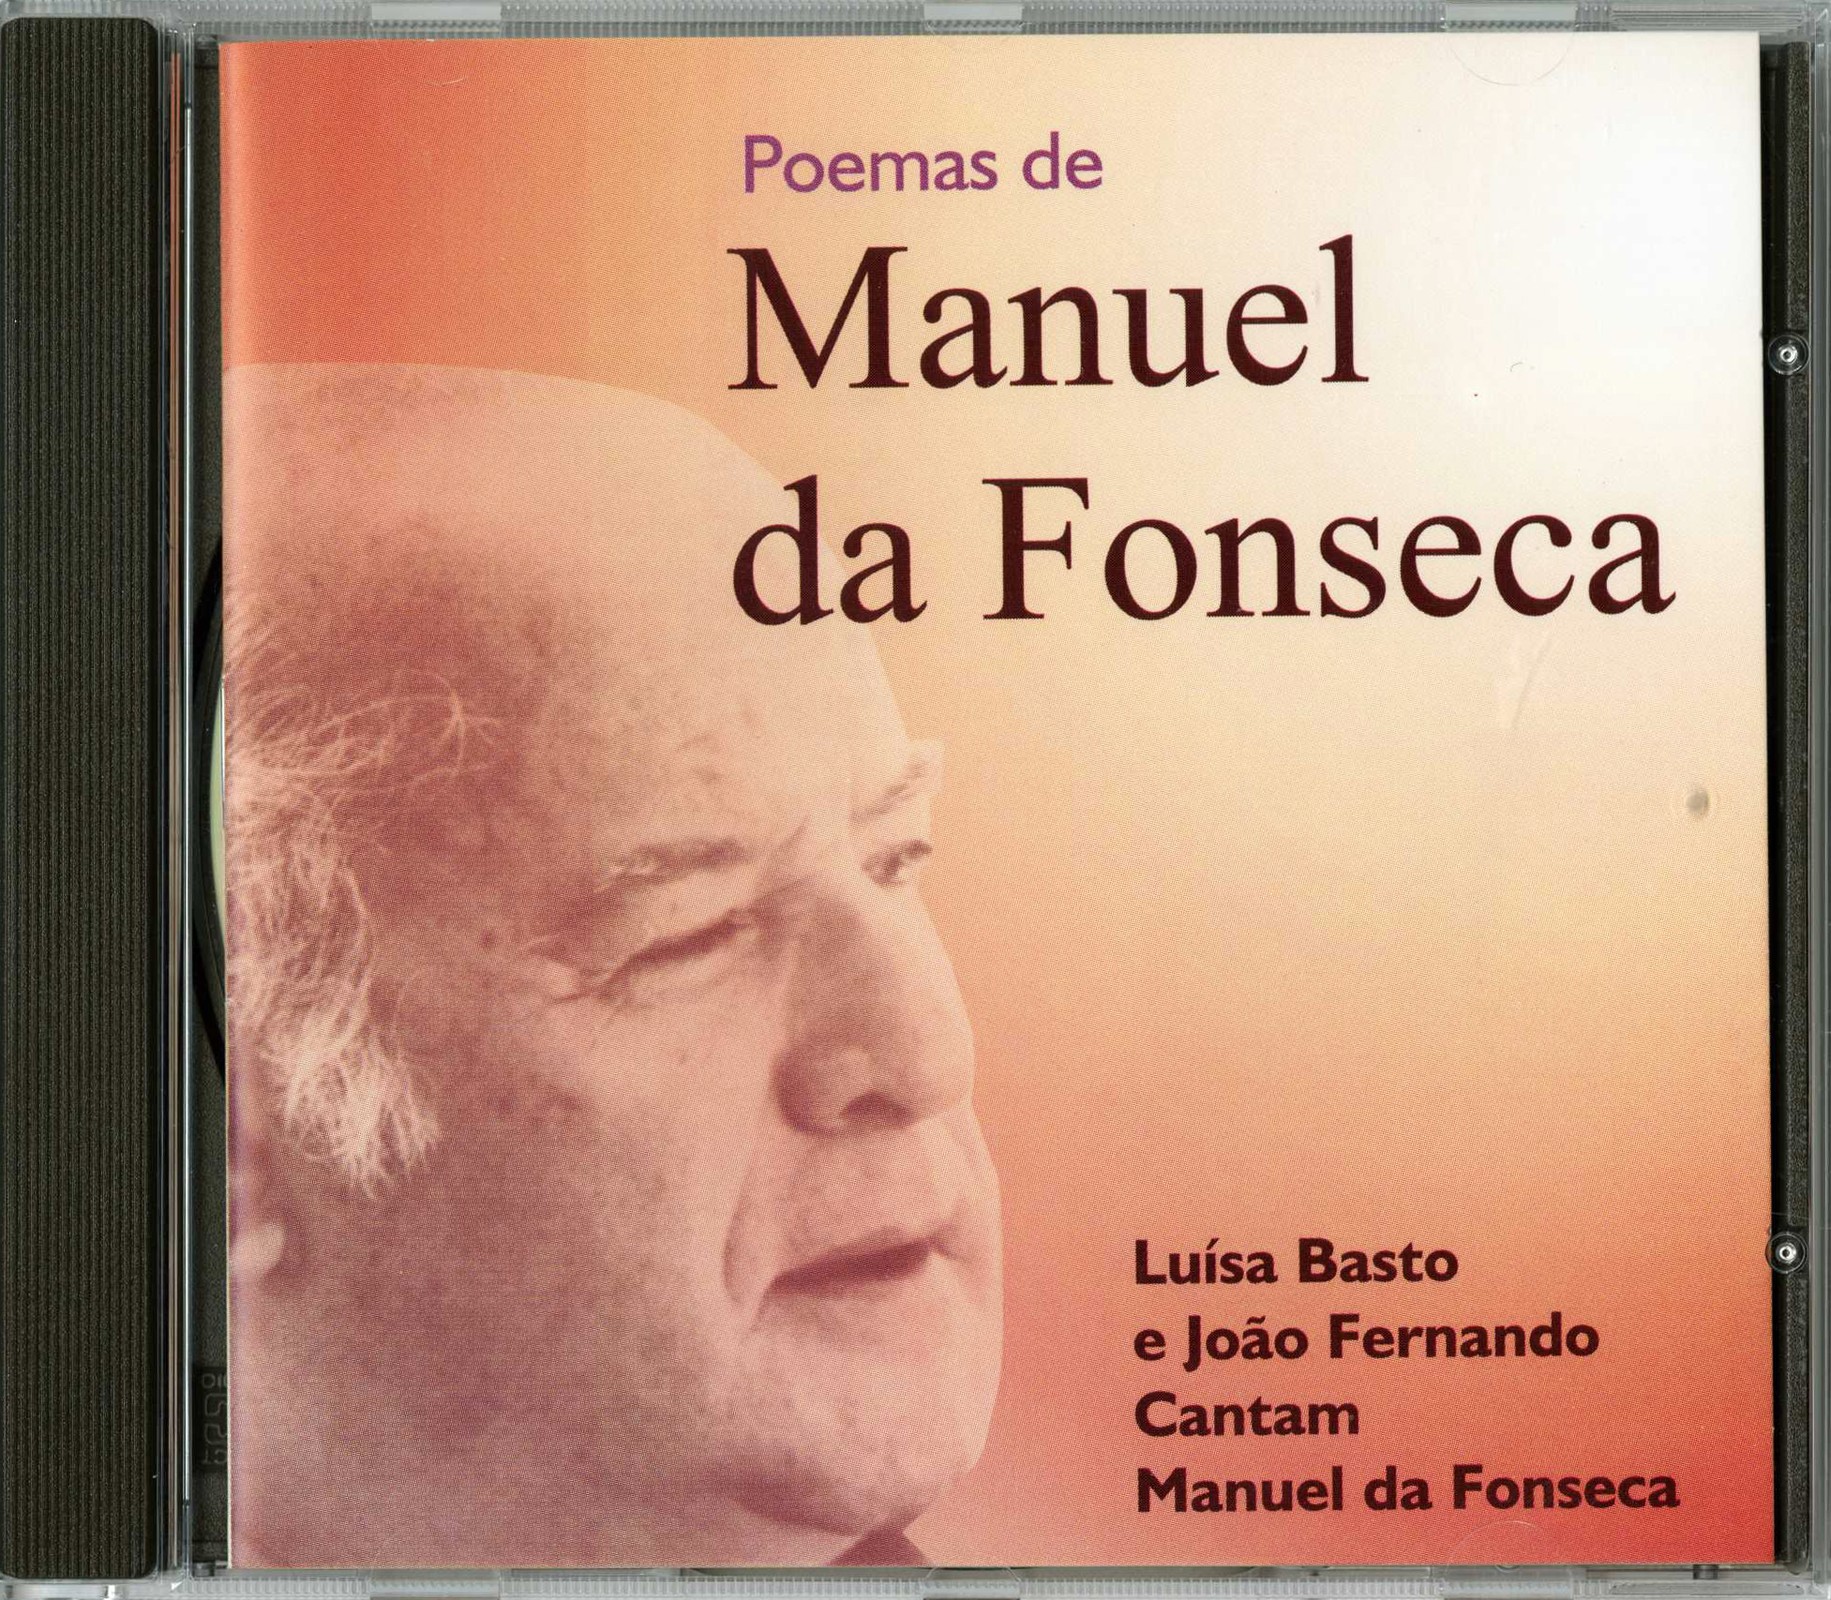 'Luísa Basto e João Fernando cantam Manuel da Fonseca', Santiago do Cacém: C. Muncipal, 2000). CD...